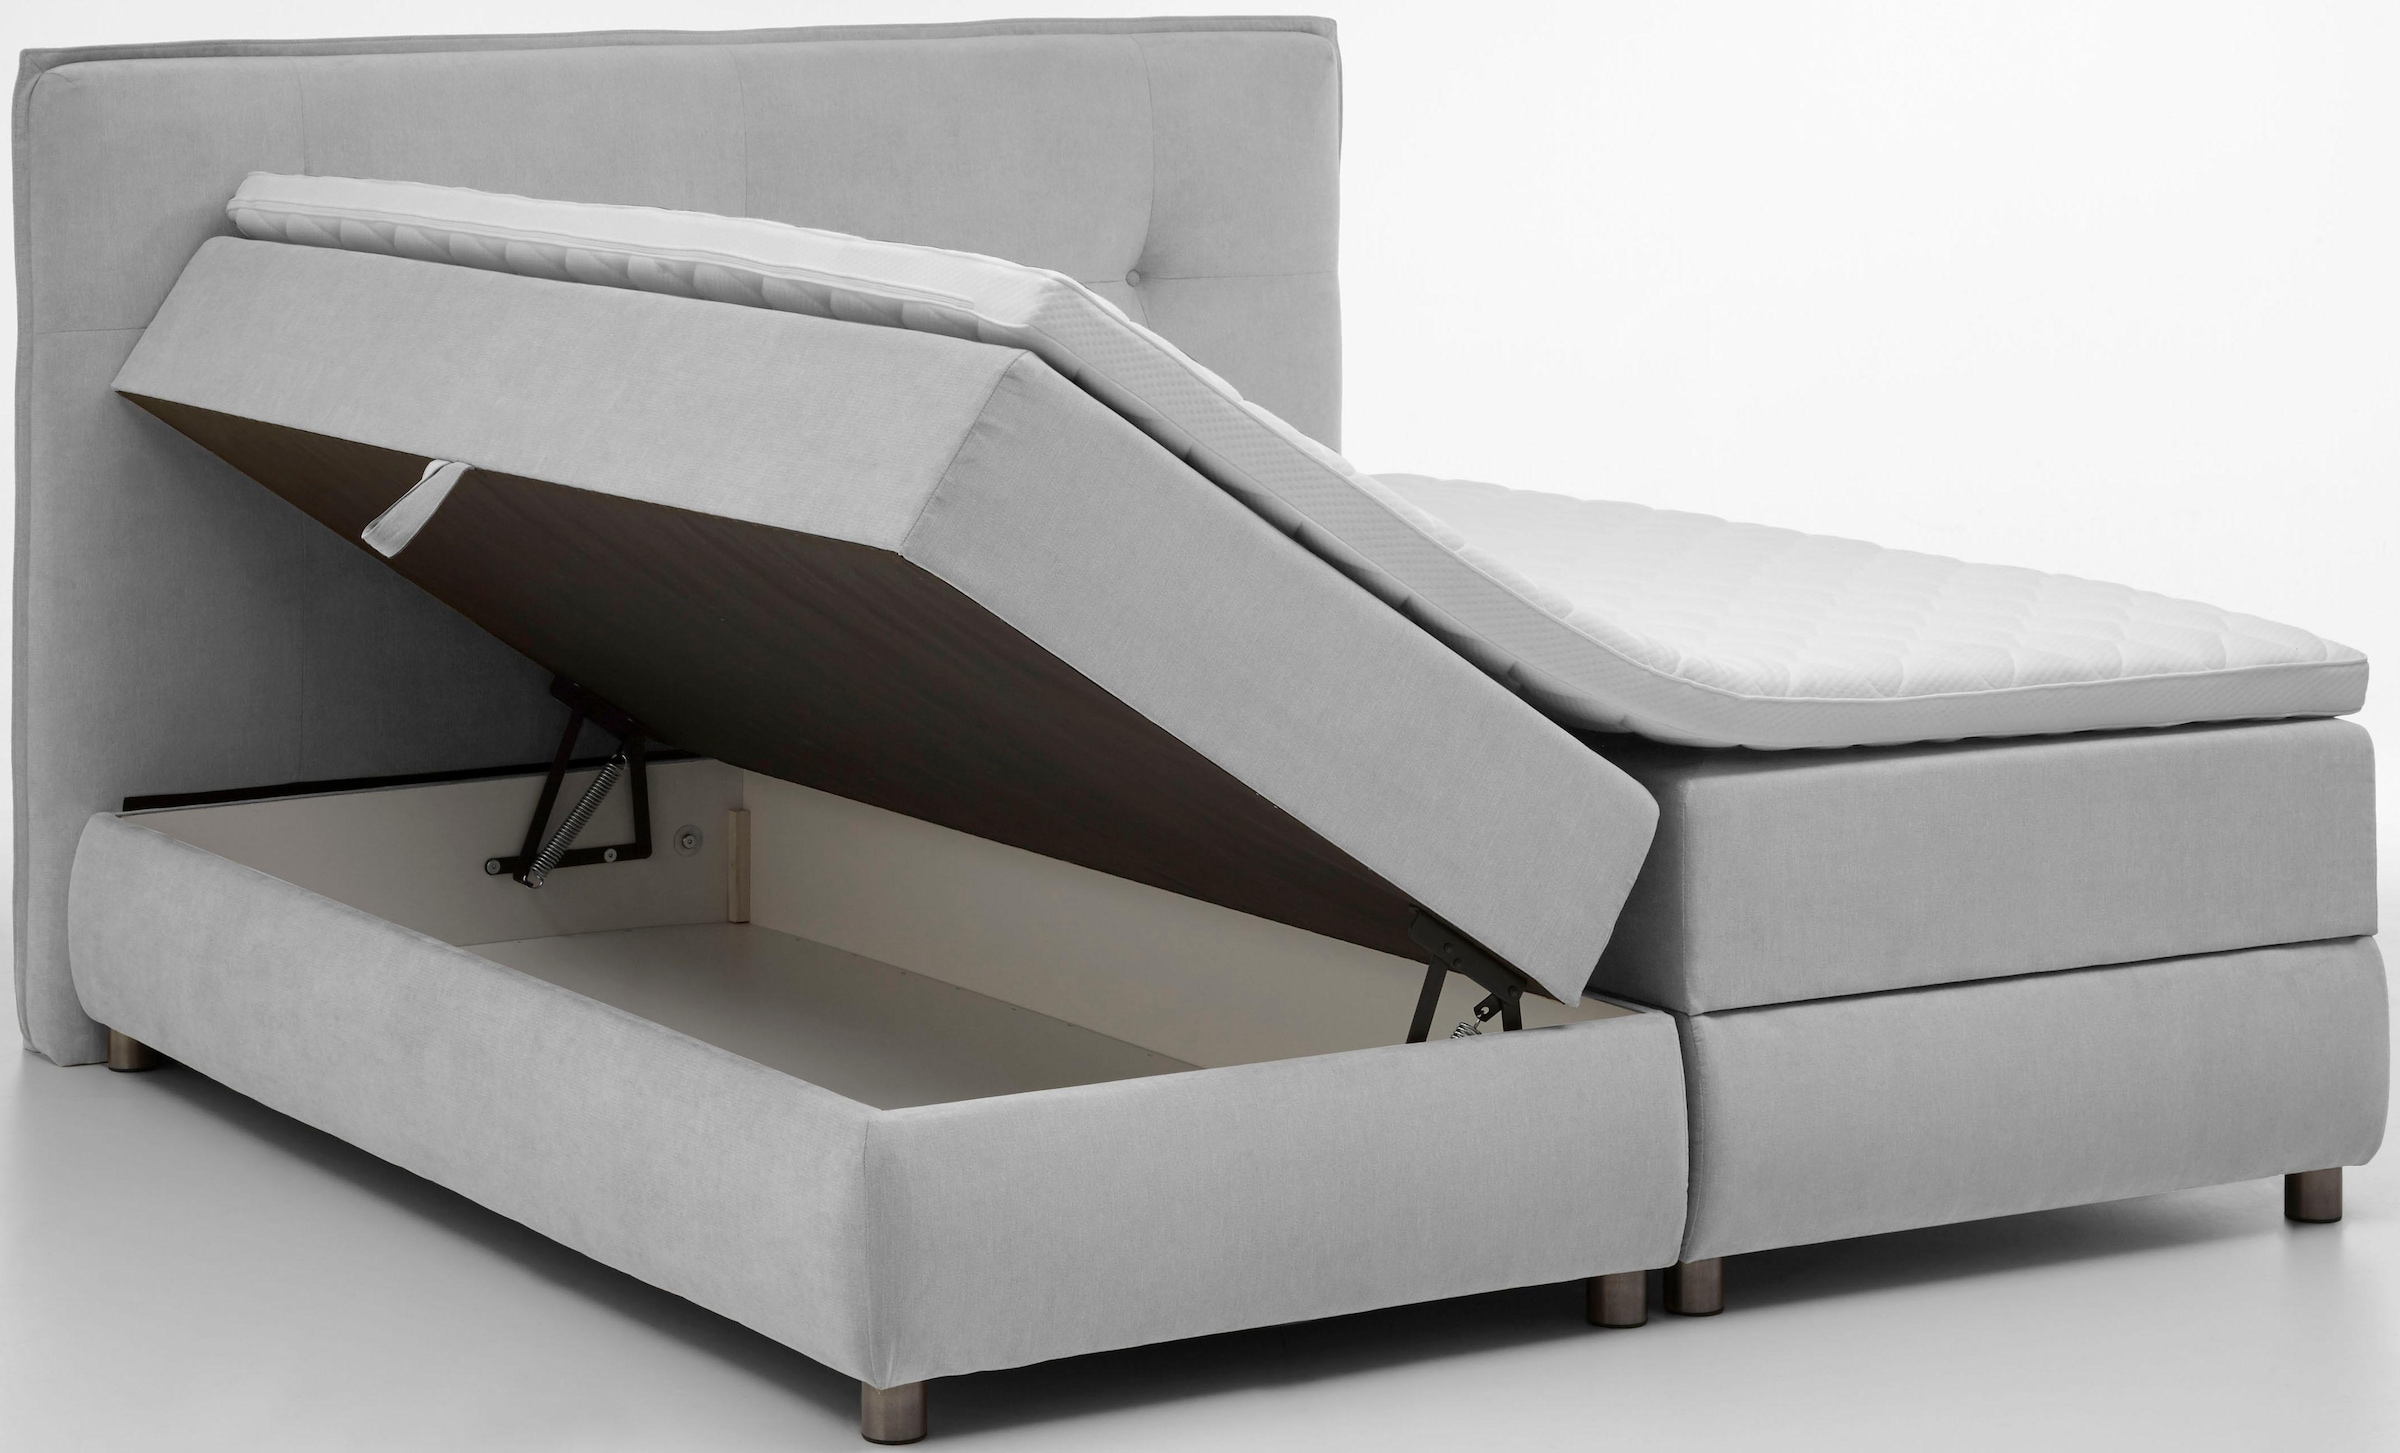 ATLANTIC home collection Boxspringbett »Tilo«, mit Tonnentaschen-Federkernmatratze, inkl. Bettkasten und Topper